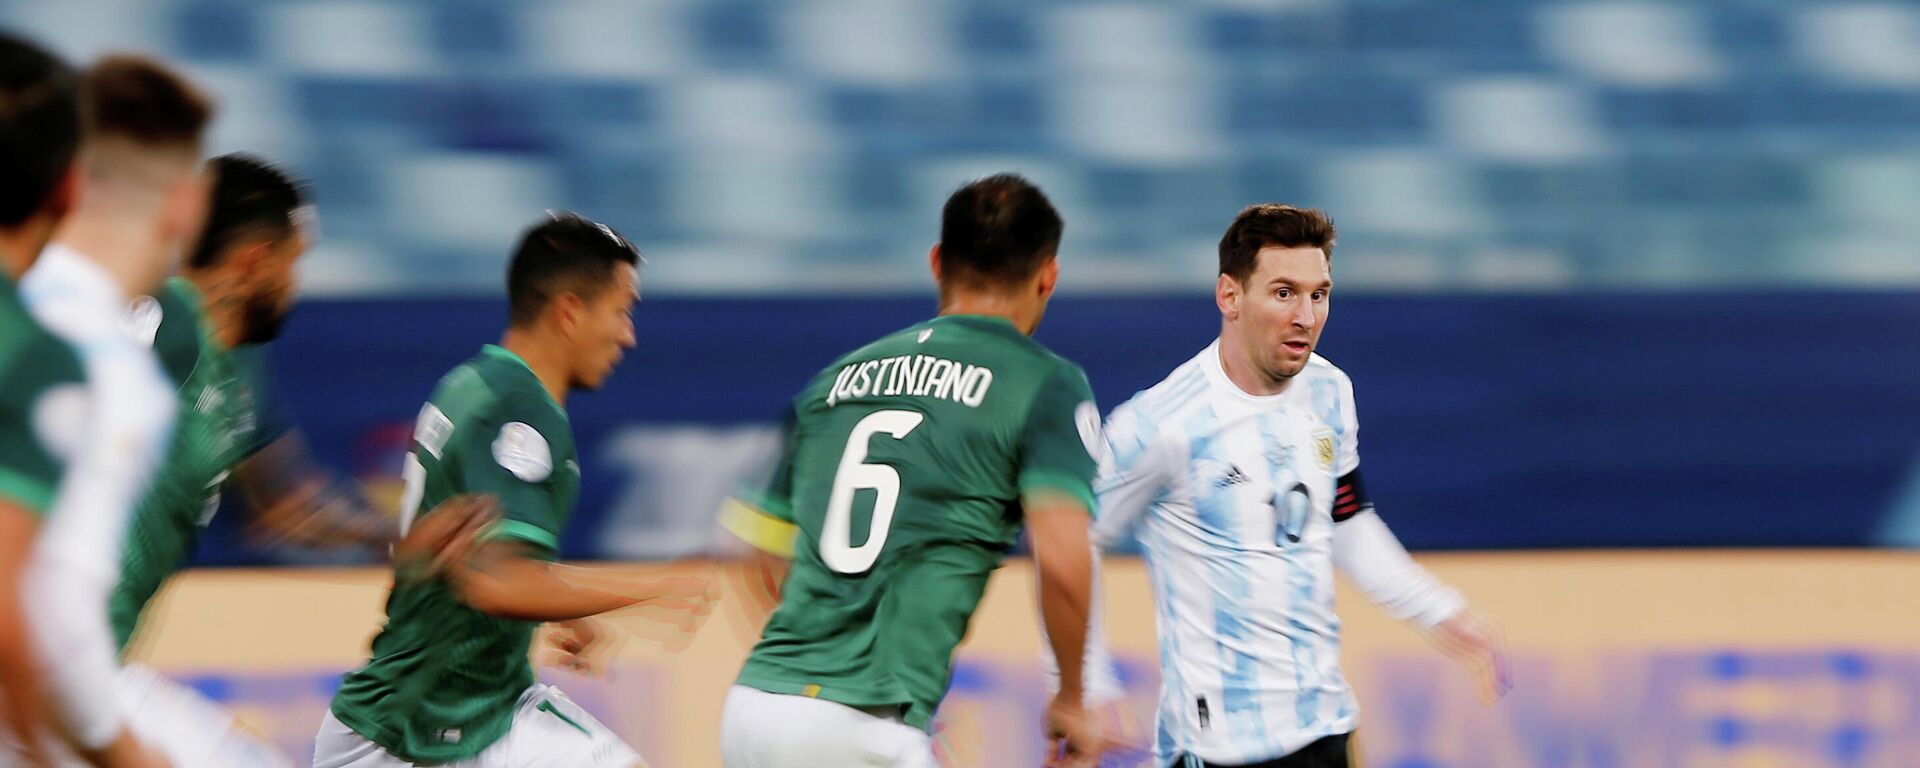 Leo Messi en el partido entre Argentina y Bolivia - Sputnik Mundo, 1920, 29.06.2021